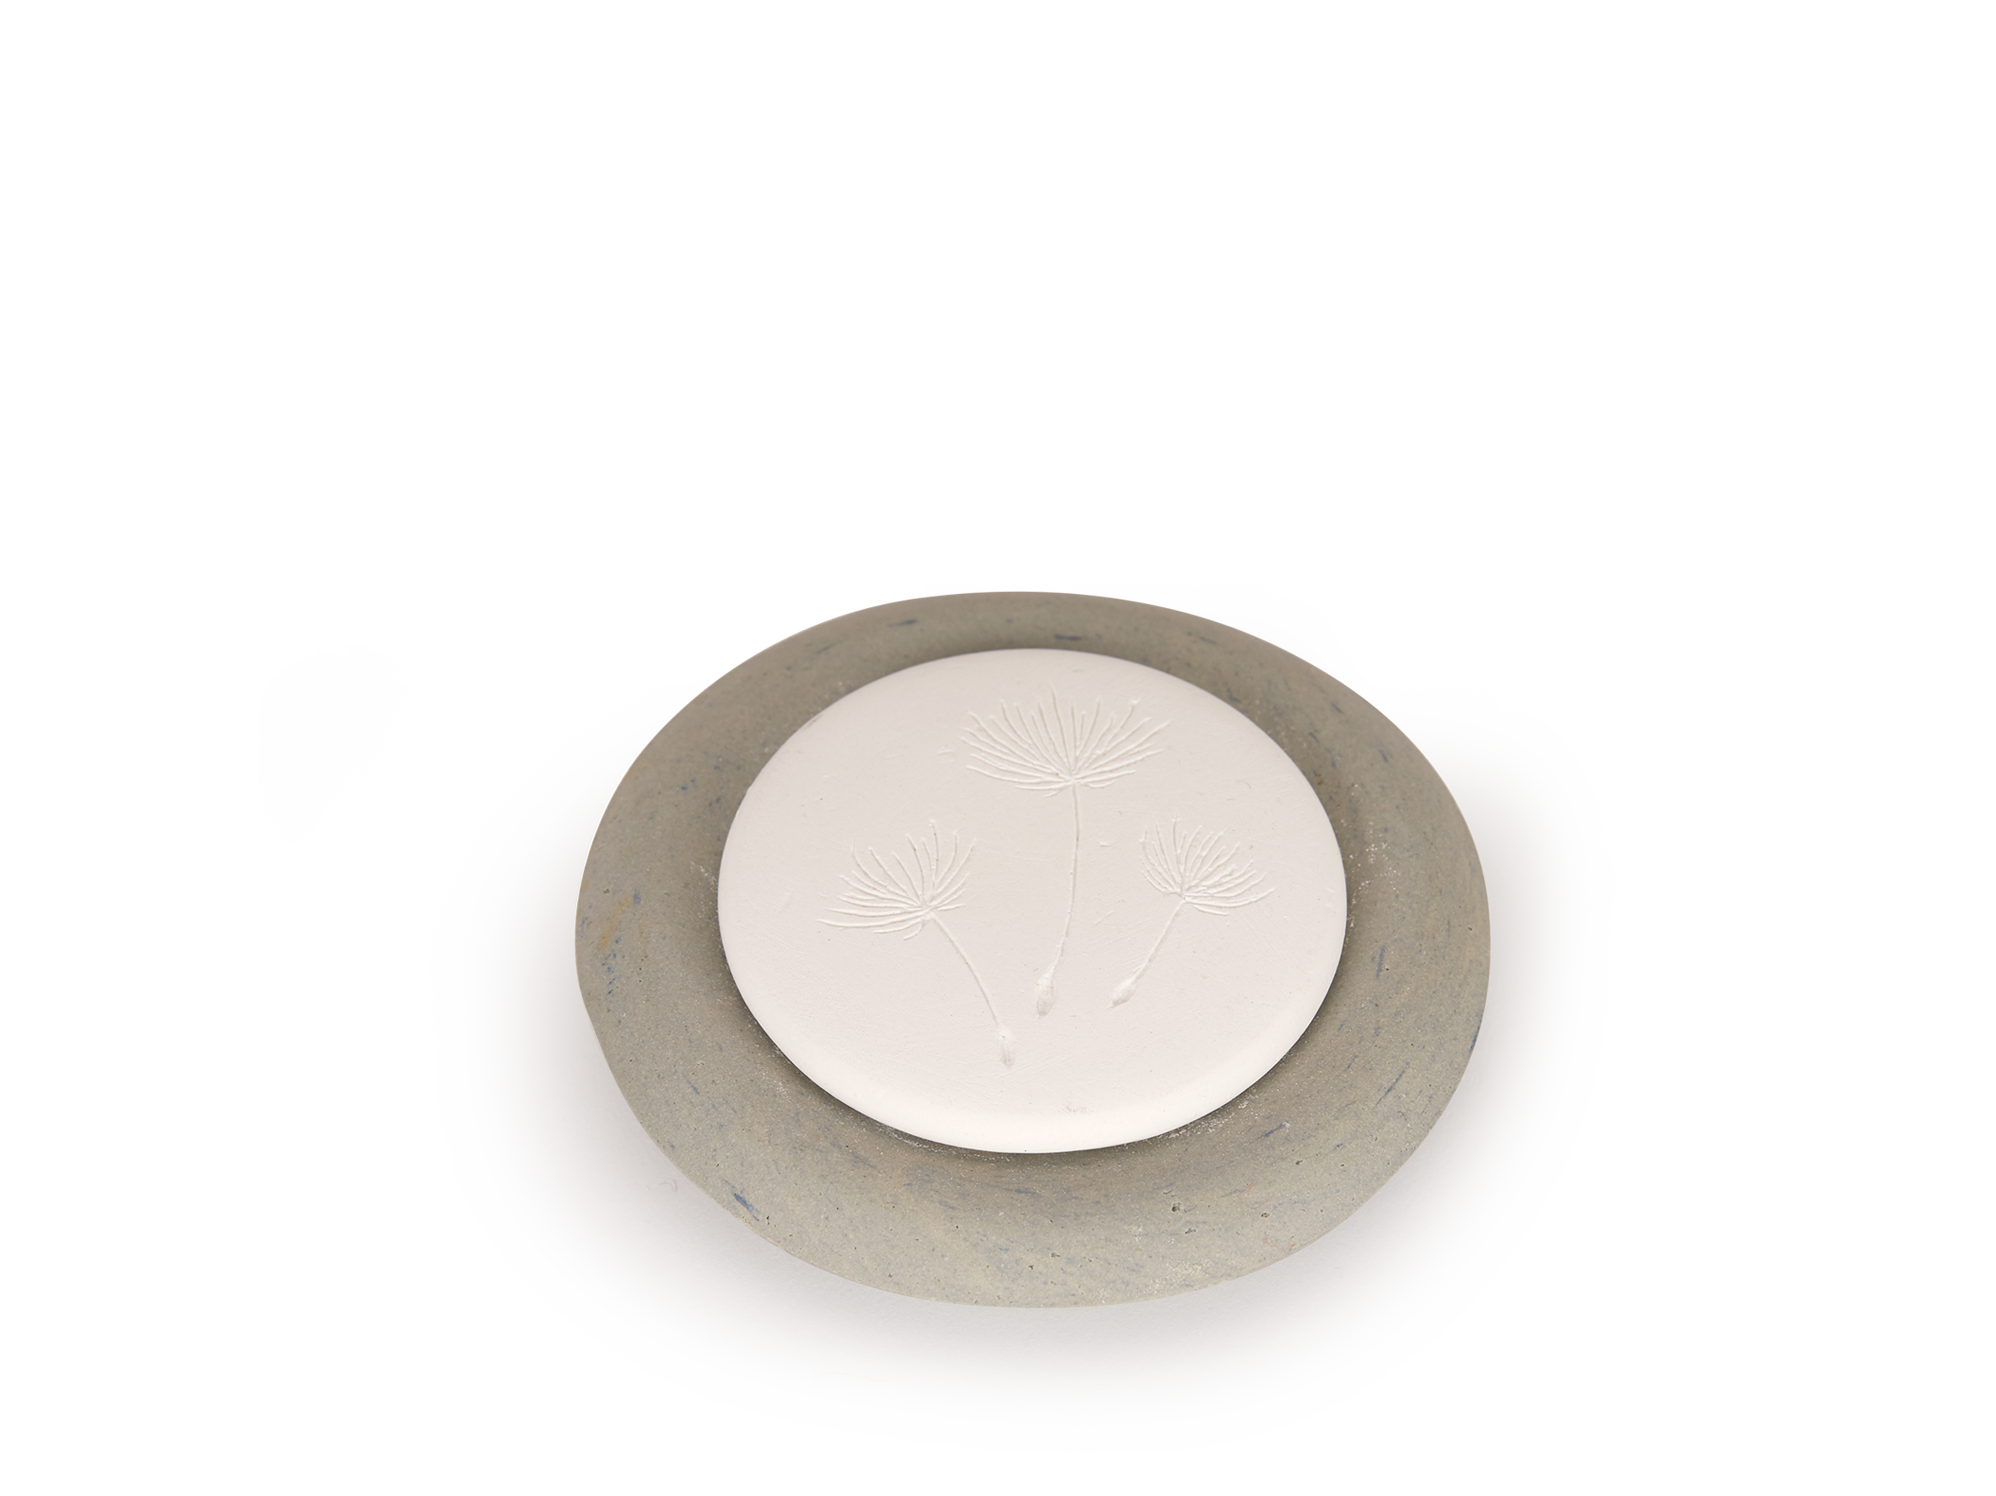 Duftstein aus Keramik mit Motiv Pusteblume, stein, ø 8 cm, H 2 cm